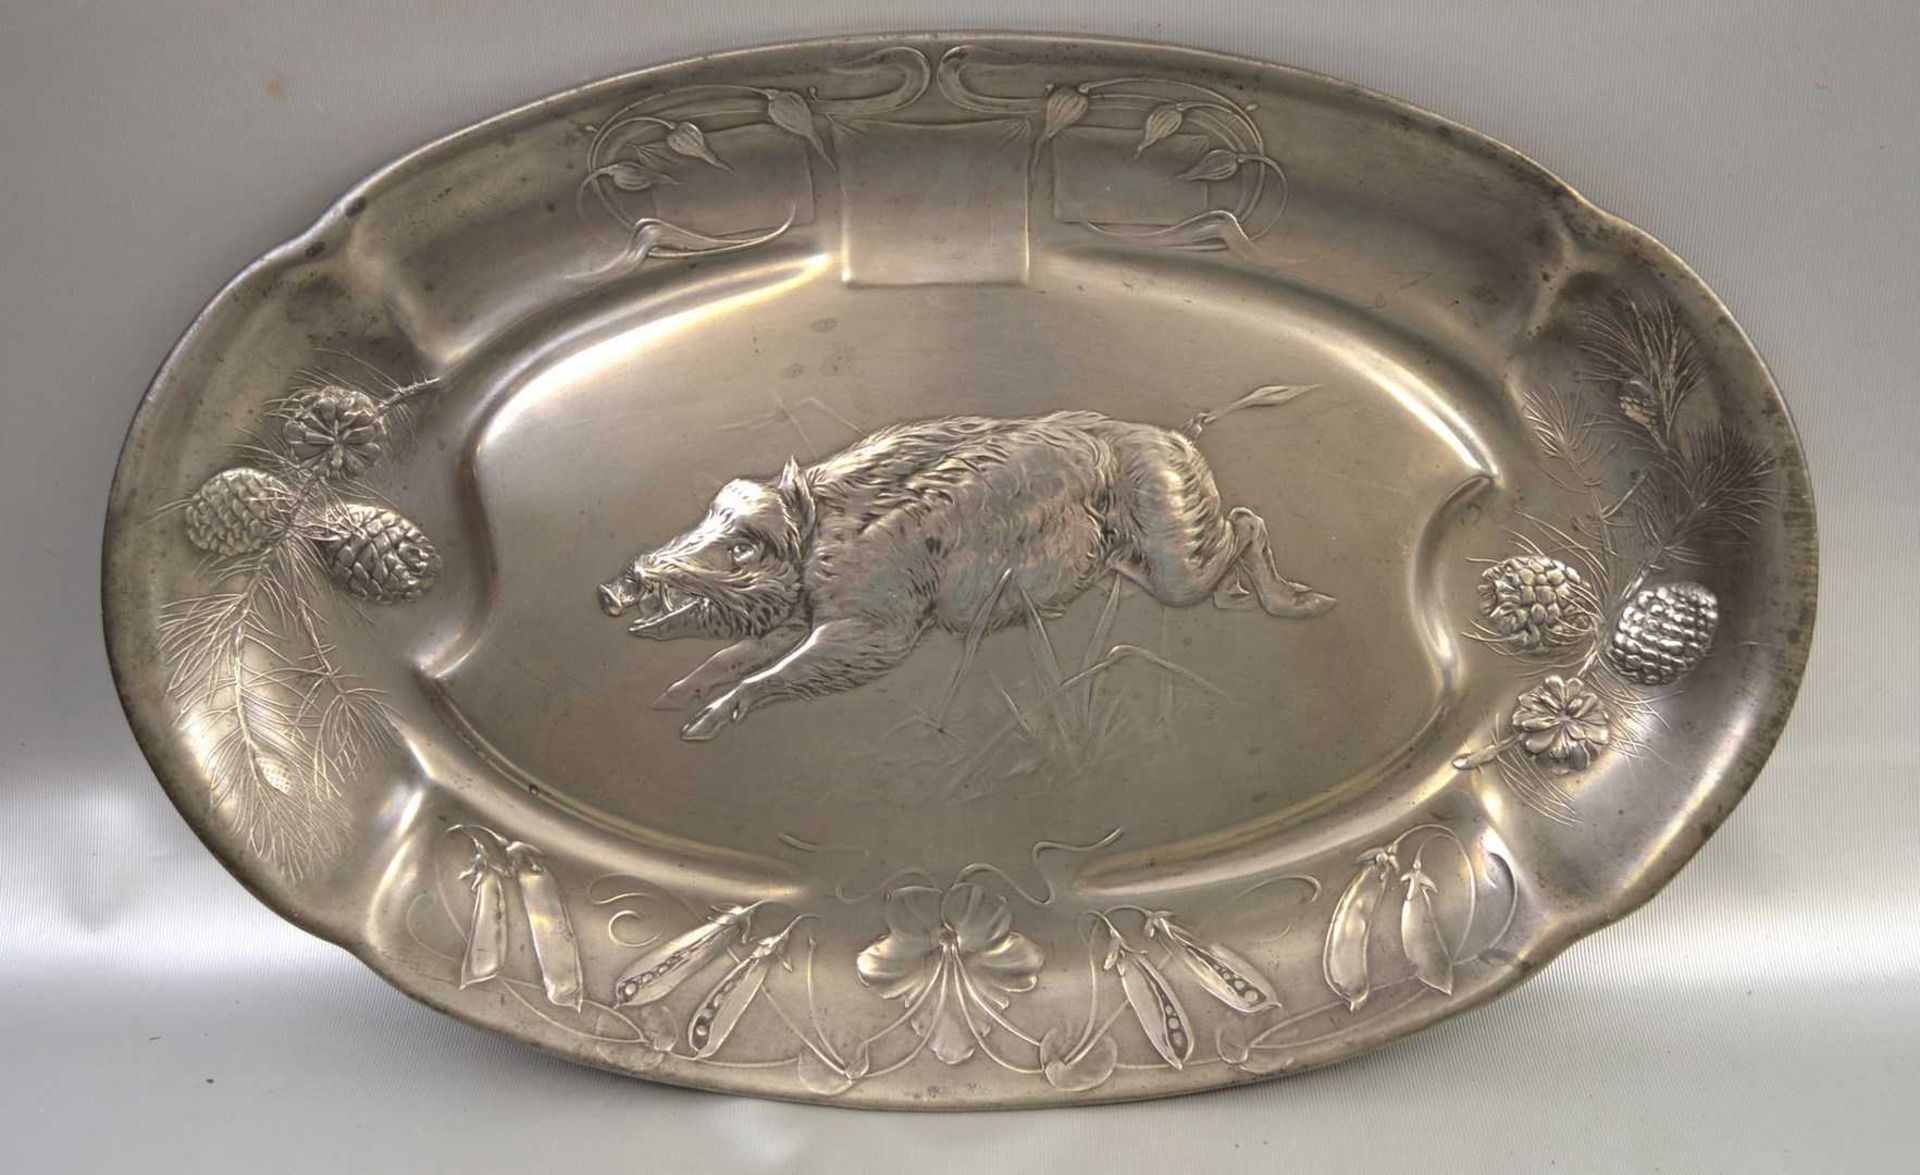 Tablett oval, breiter, mit Jugendstil-Ornamenten verzierter Rand, Spiegel mit Wildschwein, 32 X 51